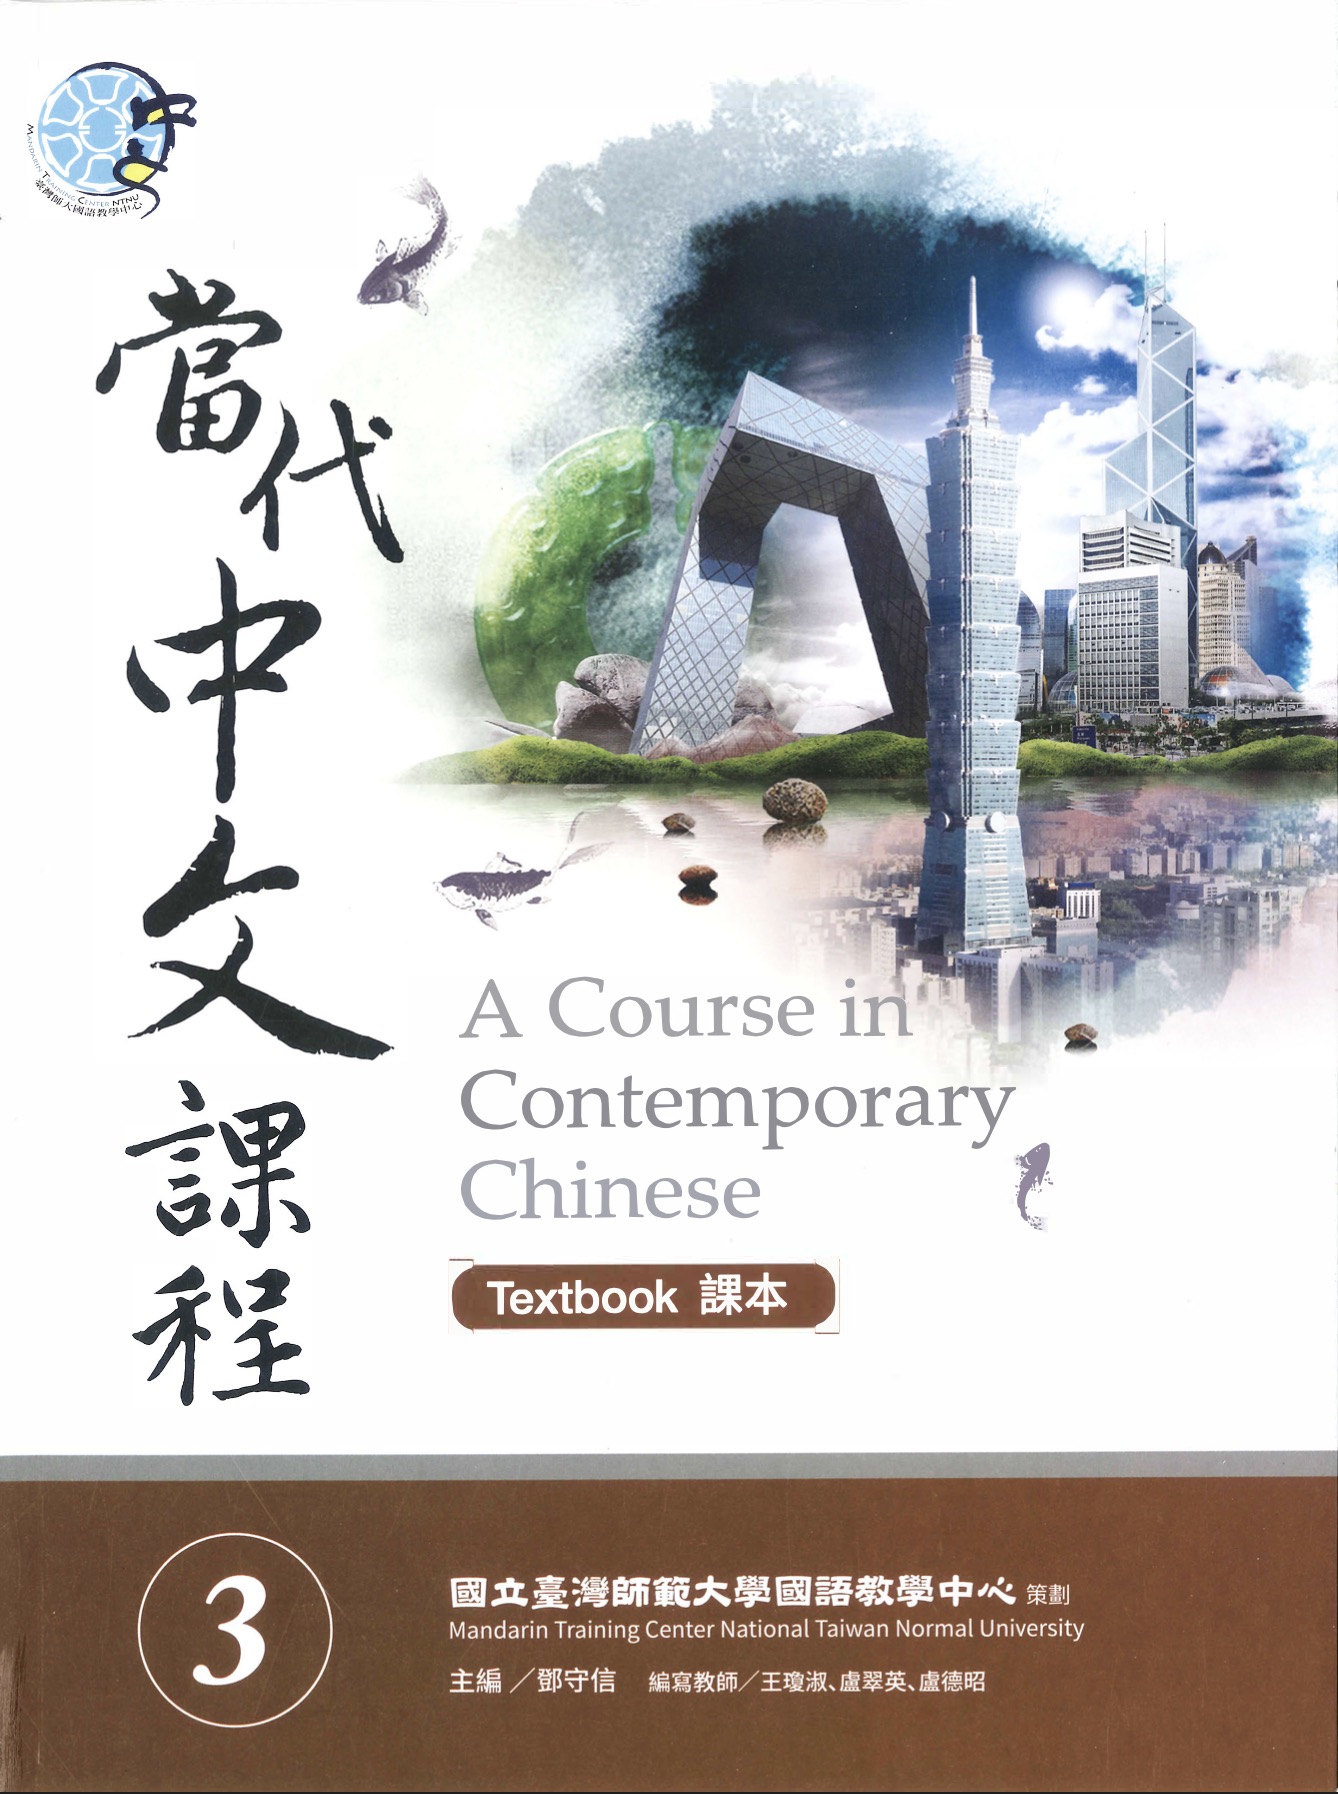 Khóa luyện thi tiếng Trung phồn thể TOCFL 2 tại Taiwan Diary